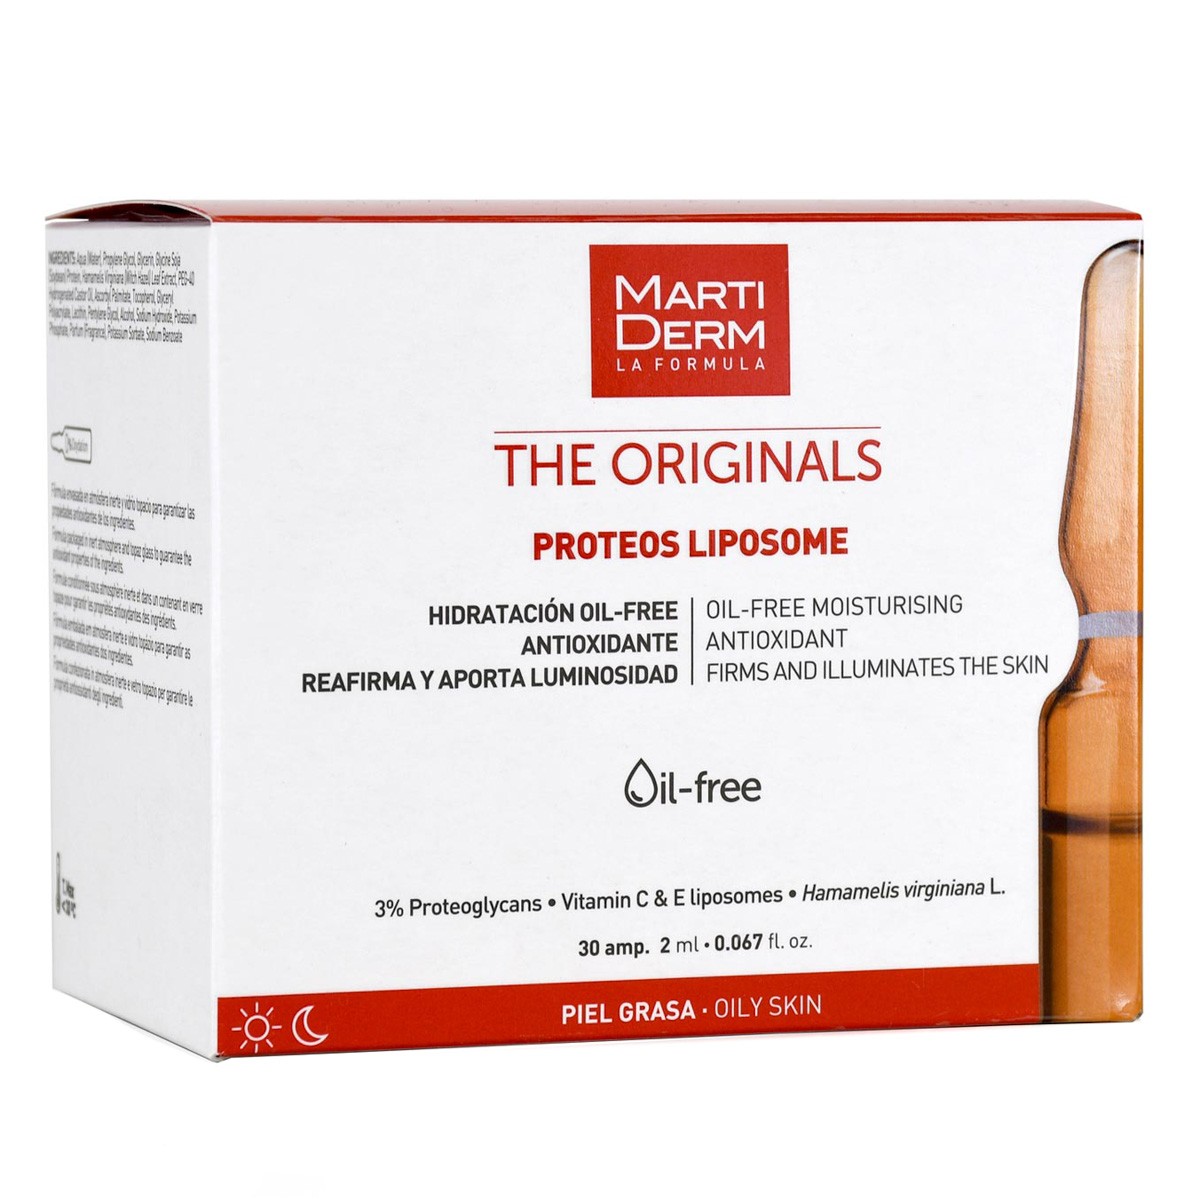 MartiDerm The Originals Proteos Liposome 30 ampollas